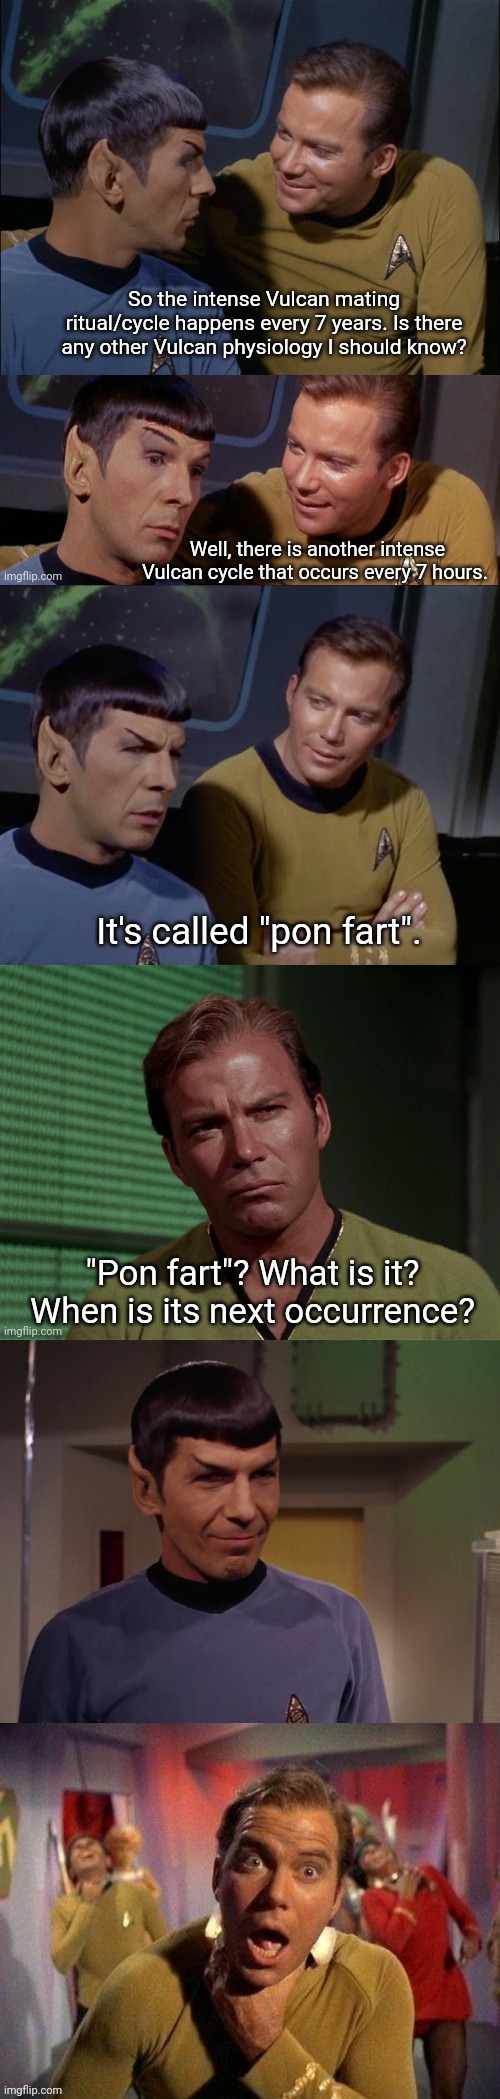 Star Trek Pon Fart | image tagged in star trek pon fart | made w/ Imgflip meme maker